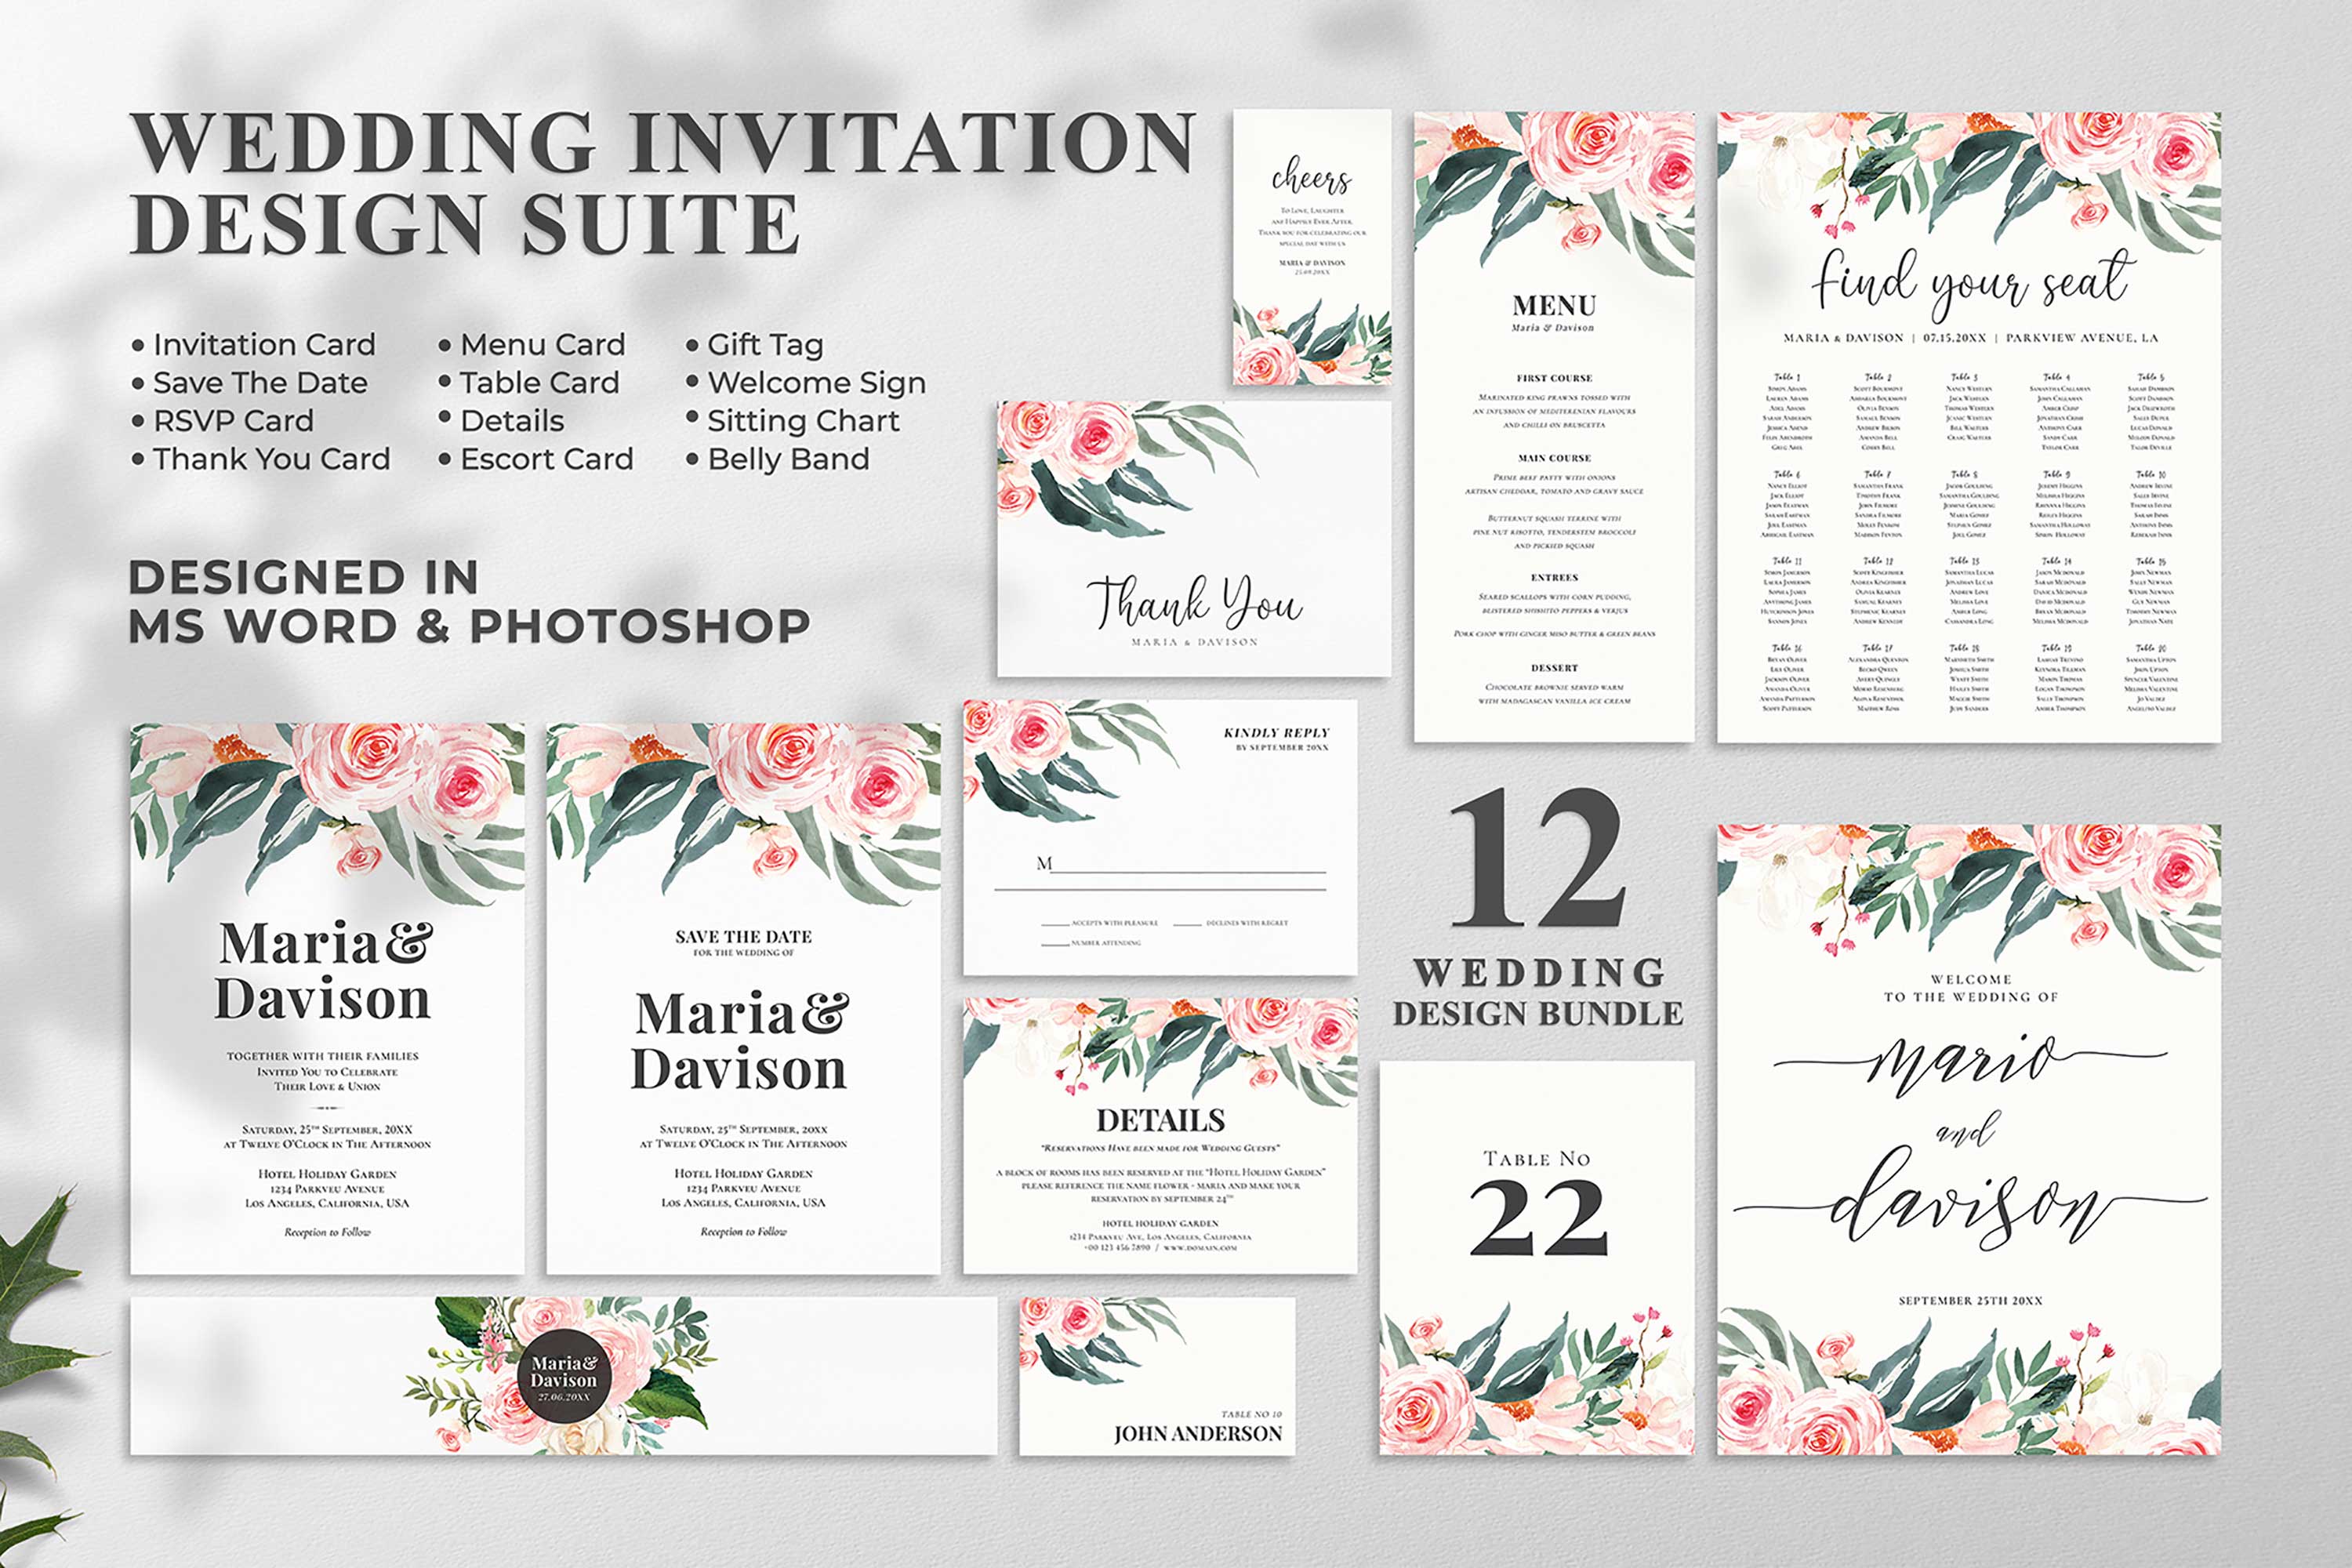 Perfect design for wedding invitation.